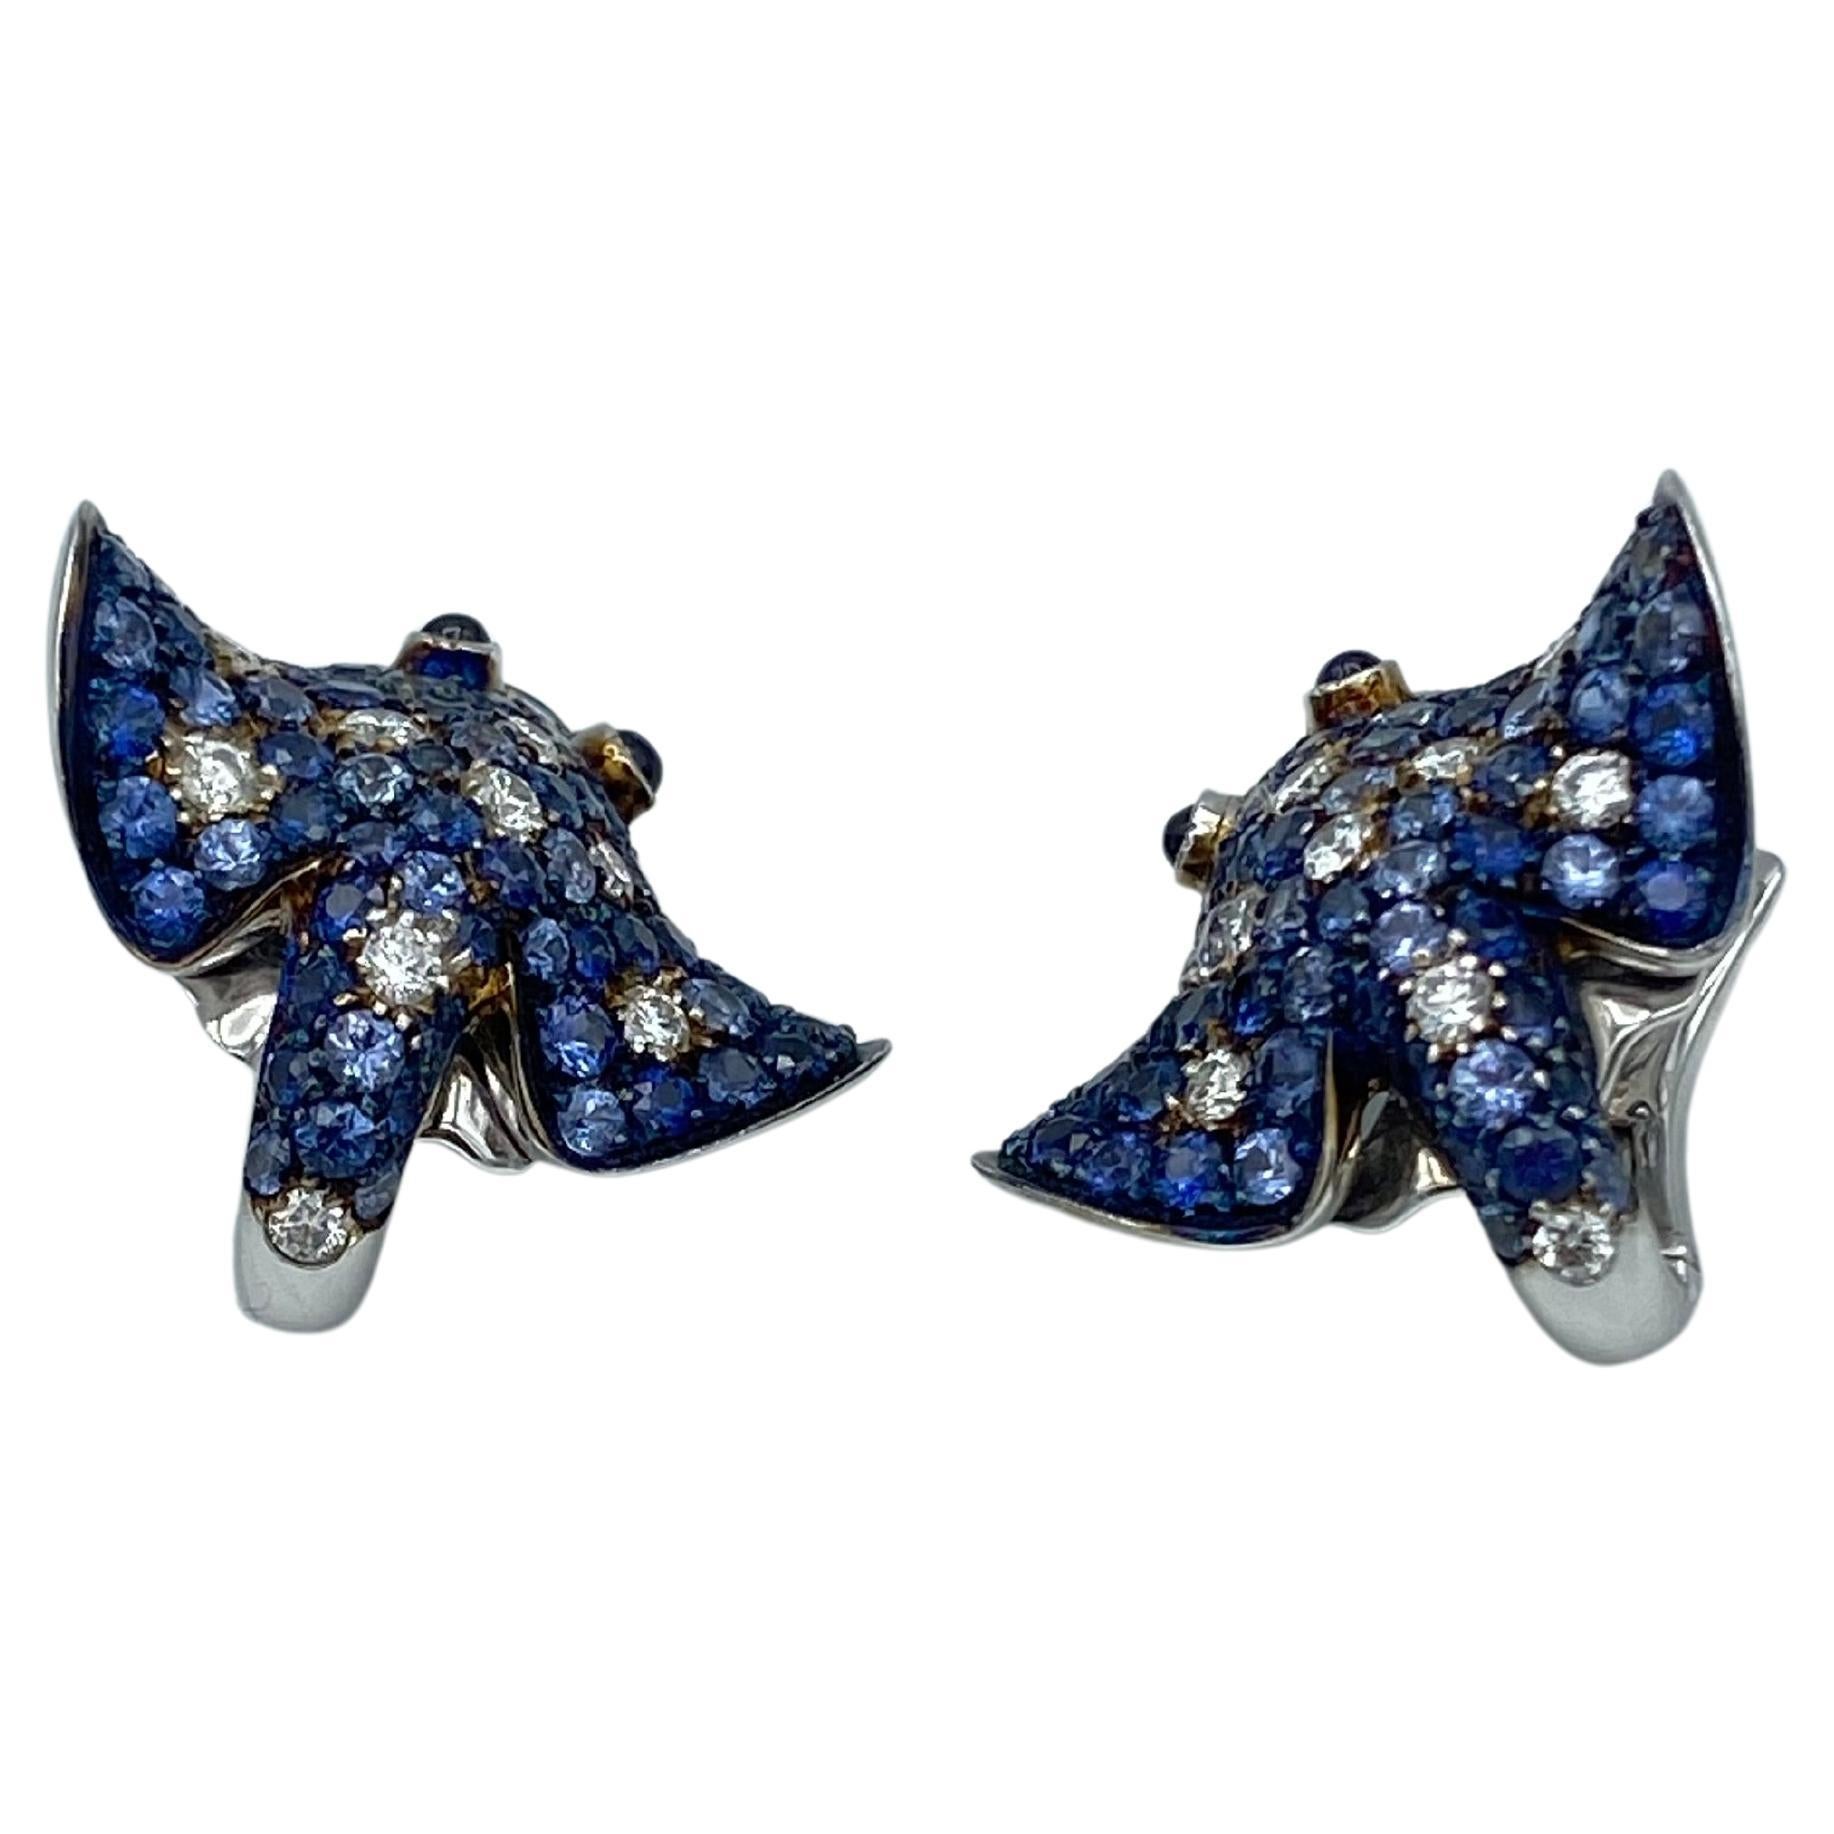 Ray Fish Weißer Diamant Blauer Saphir 18Kt Gold Ohrringe Made in Italy
Diese Ohrringe werden in meiner Werkstatt in Verona, Norditalien, handgefertigt. 
Sie sind mit Diamanten und blauen Saphiren in drei verschiedenen Schattierungen besetzt und ihre